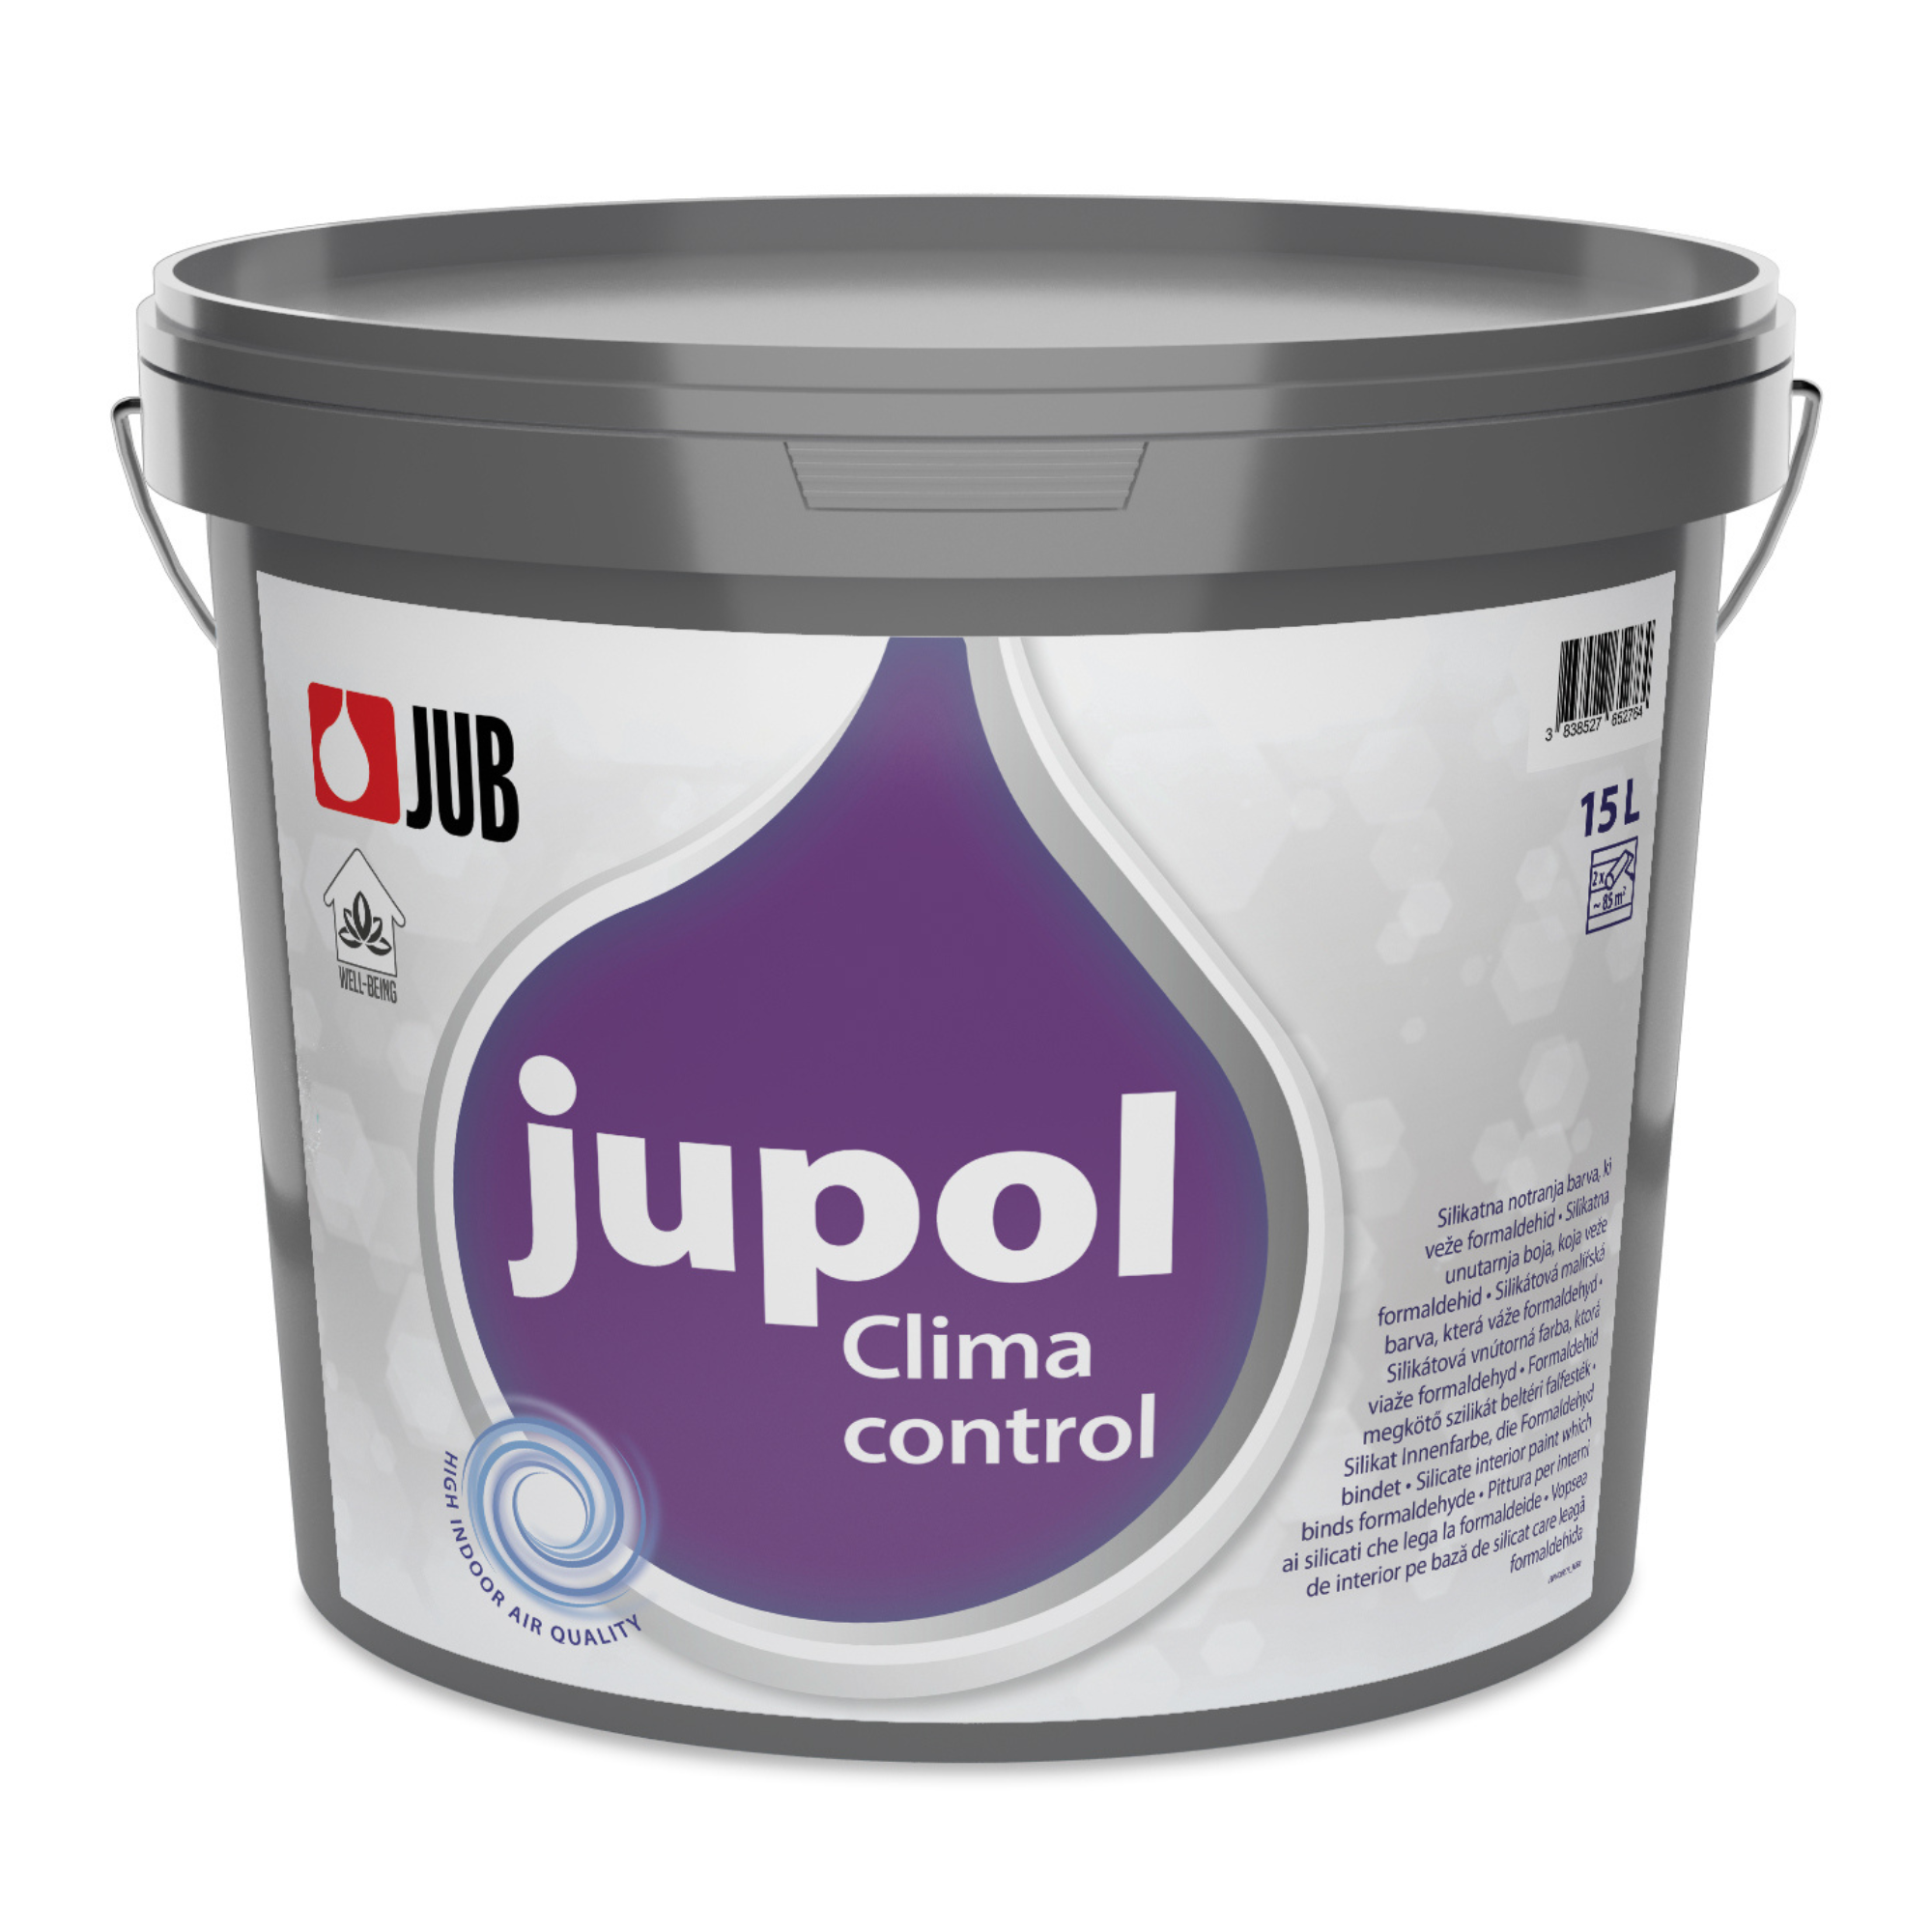 JUB JUPOL Clima control silikátová vnútorná farba viažuca formaldehyd 15 l